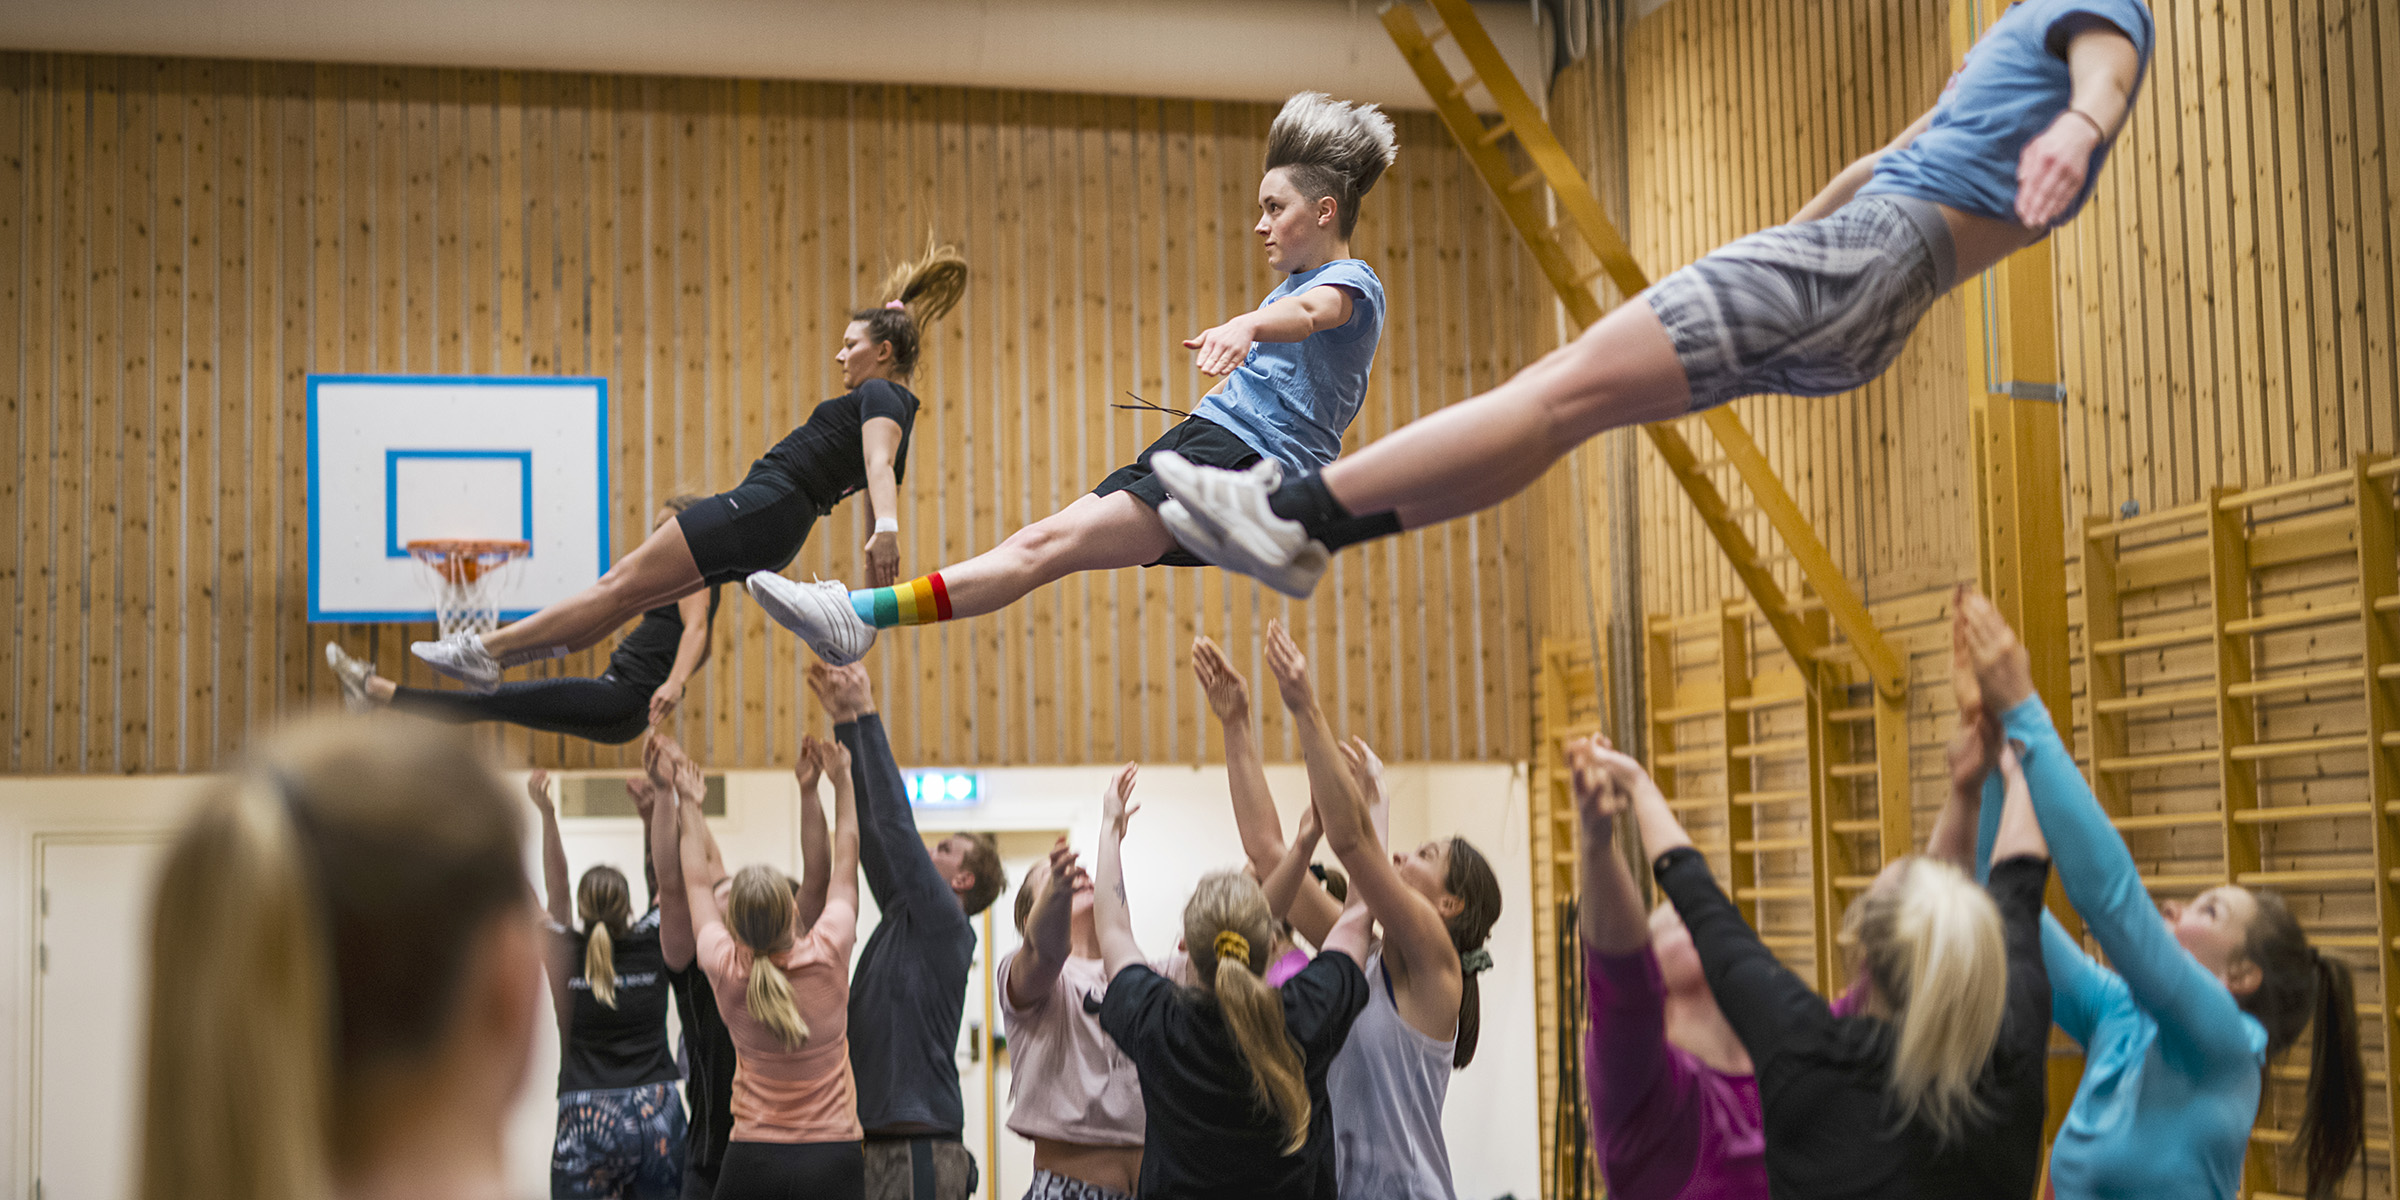 En større gruppe mennesker øver på akrobatikk i en gymsal. I fellesskap kaster de tre personer opp i luften.